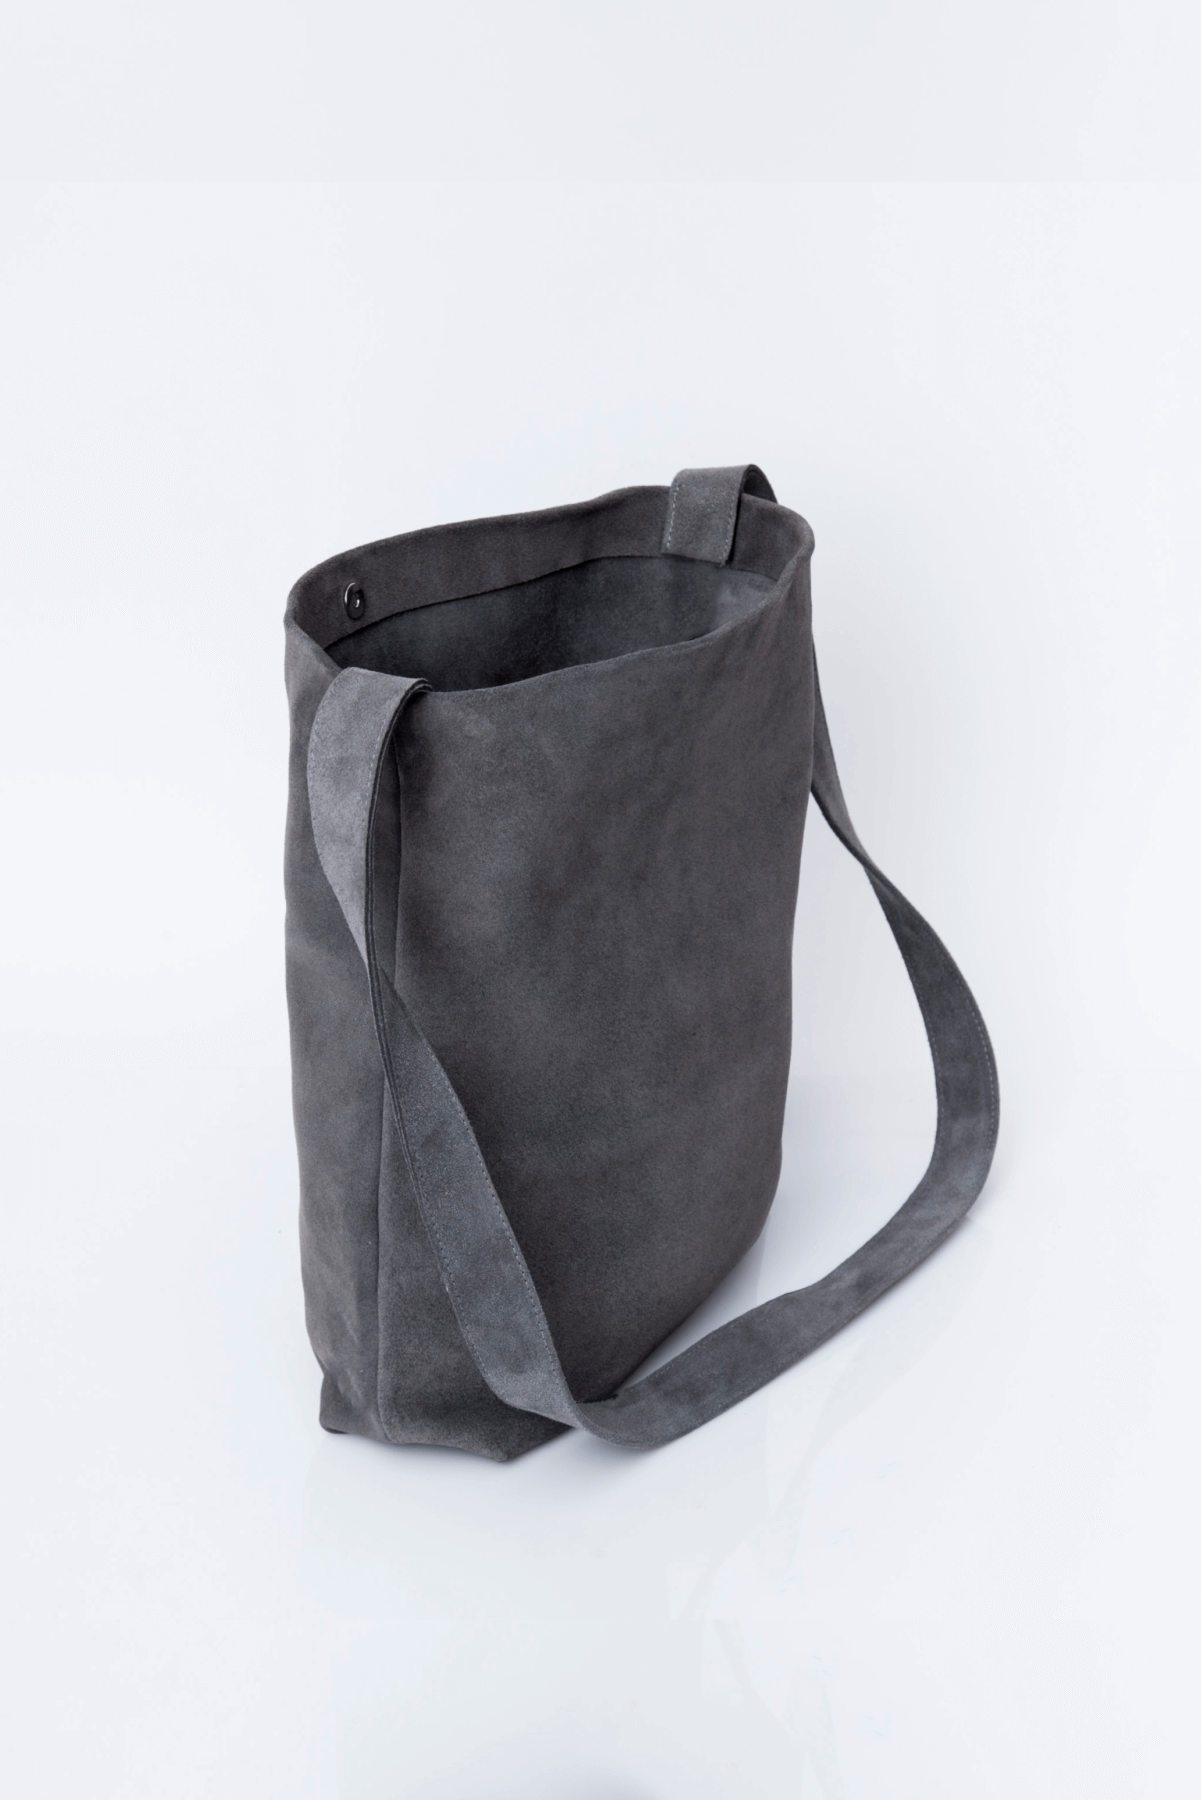 Mink Suede Tote Bag Soft Suede Bag Lightweight Everyday 